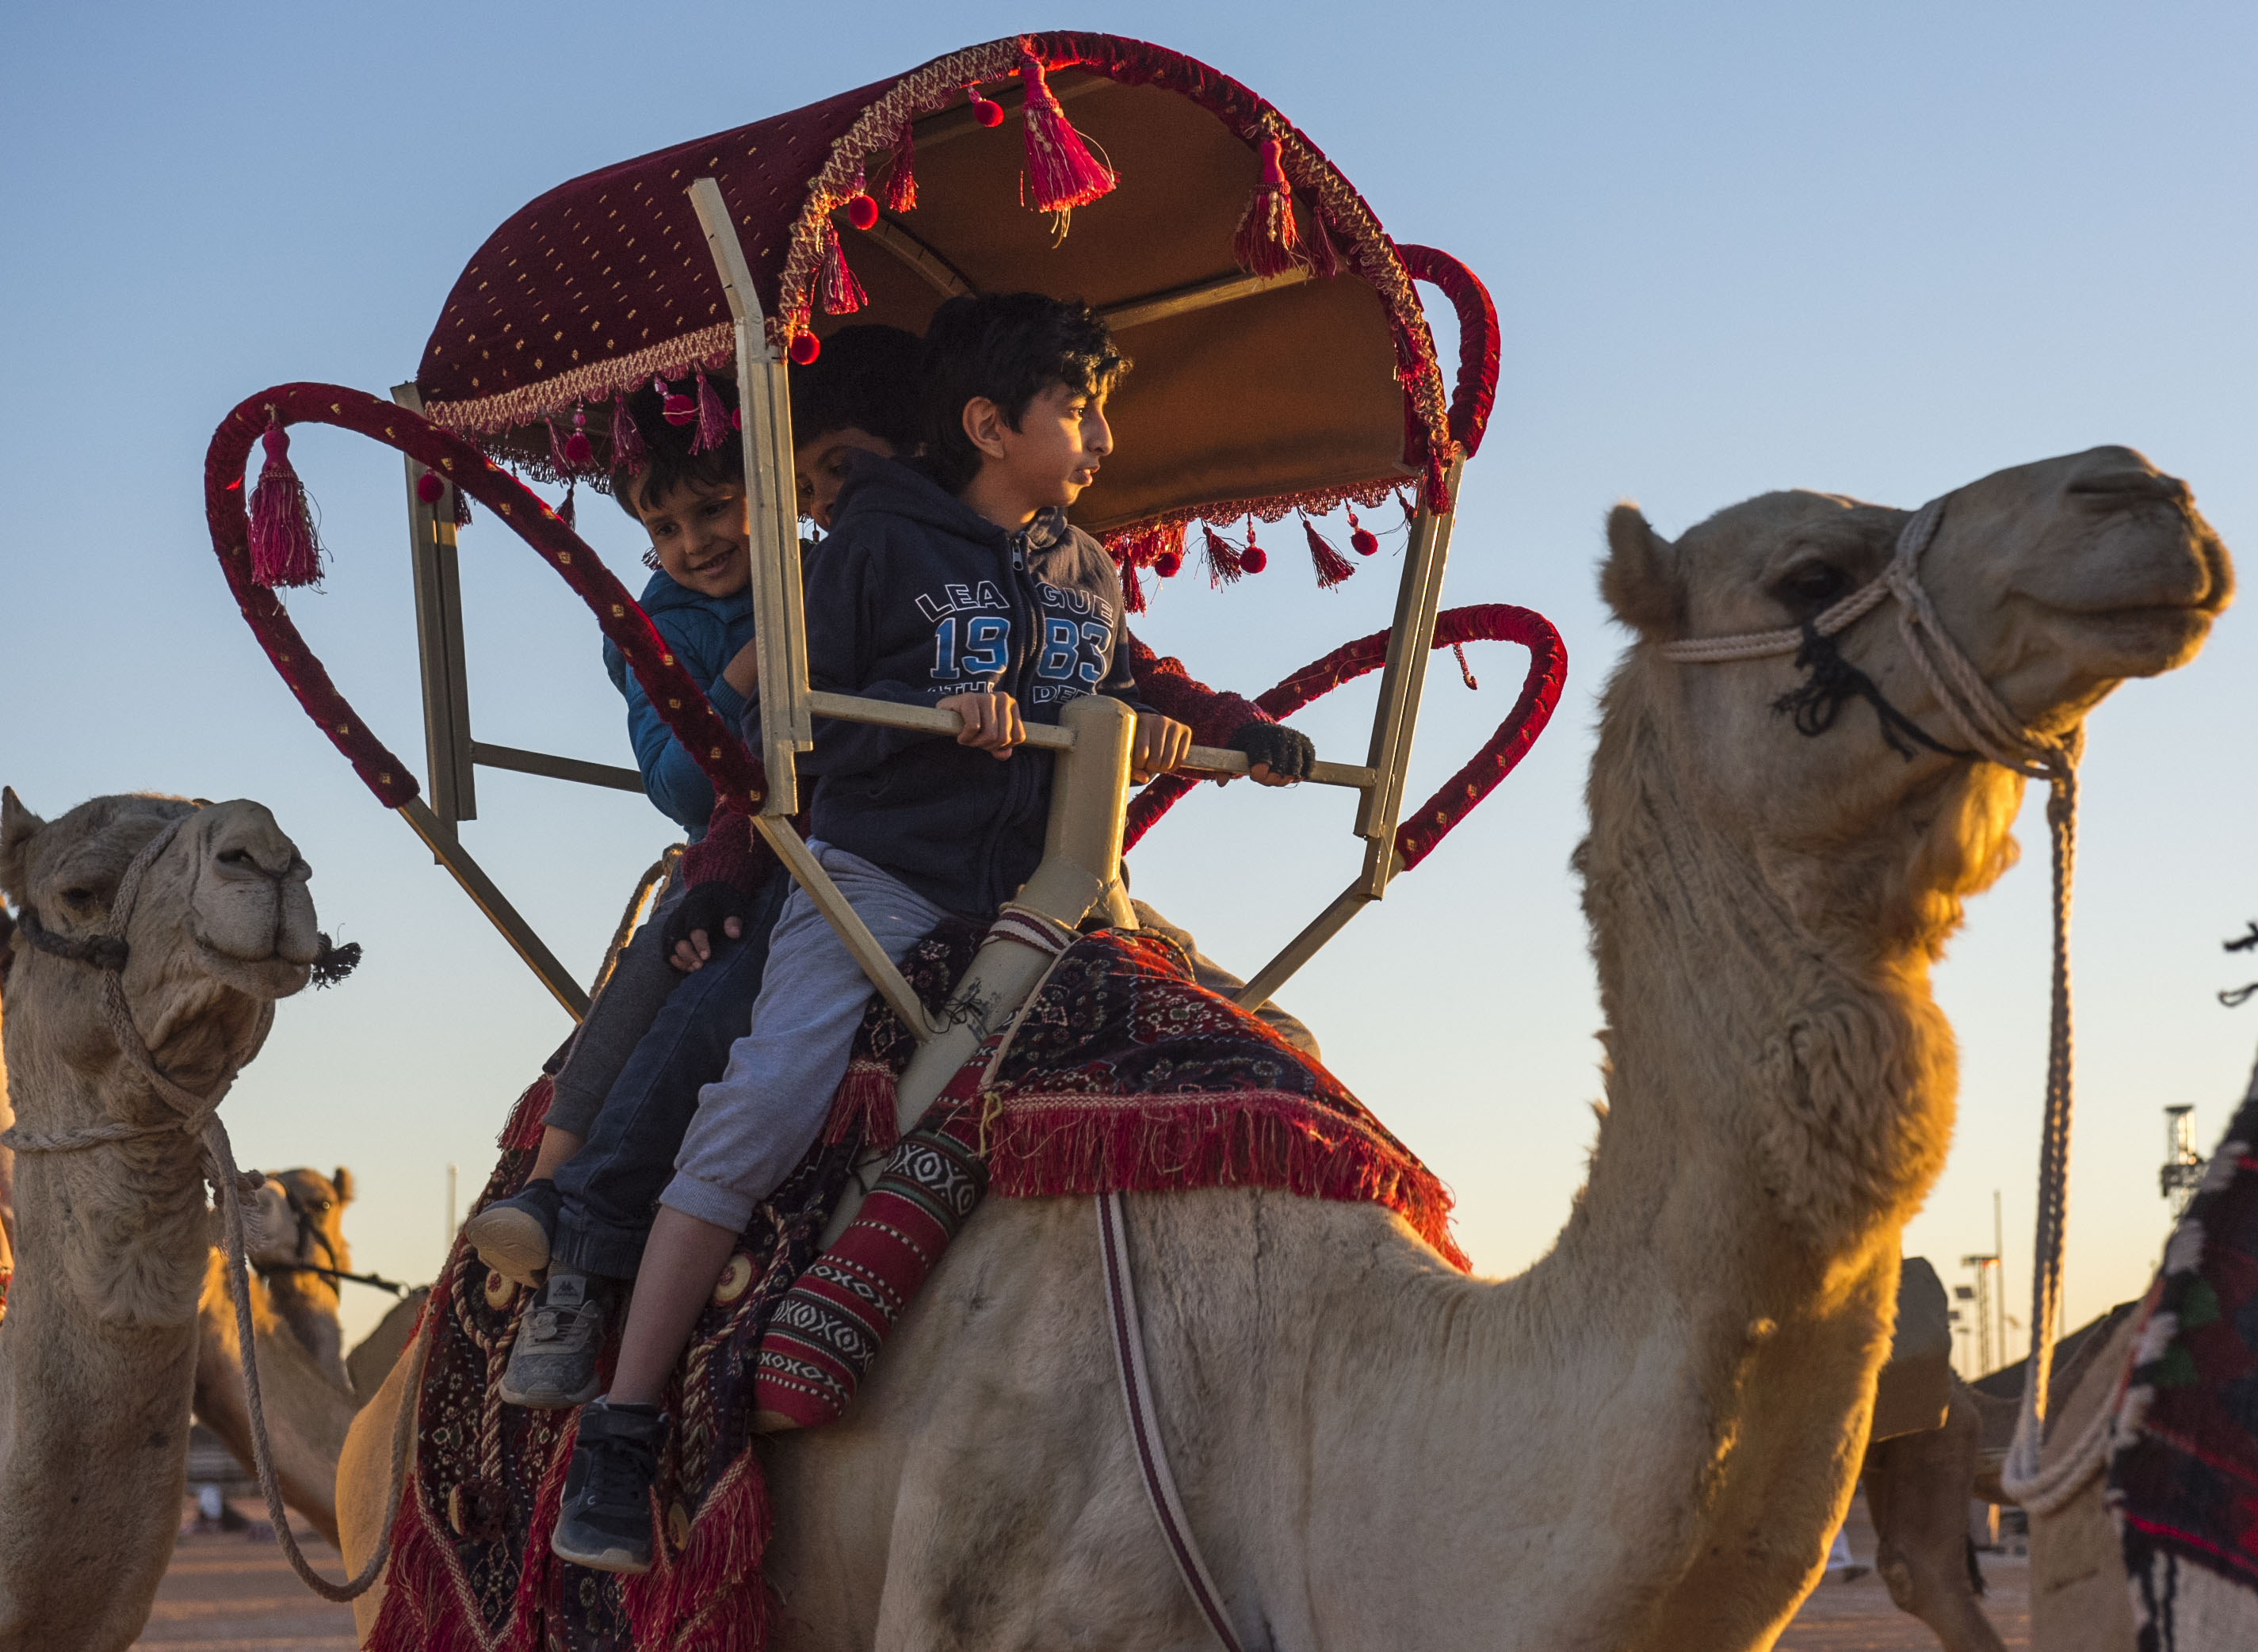 “المواطن” توثق بالفيديو والصور لحظات نادرة في مهرجان الملك عبدالعزيز للإبل